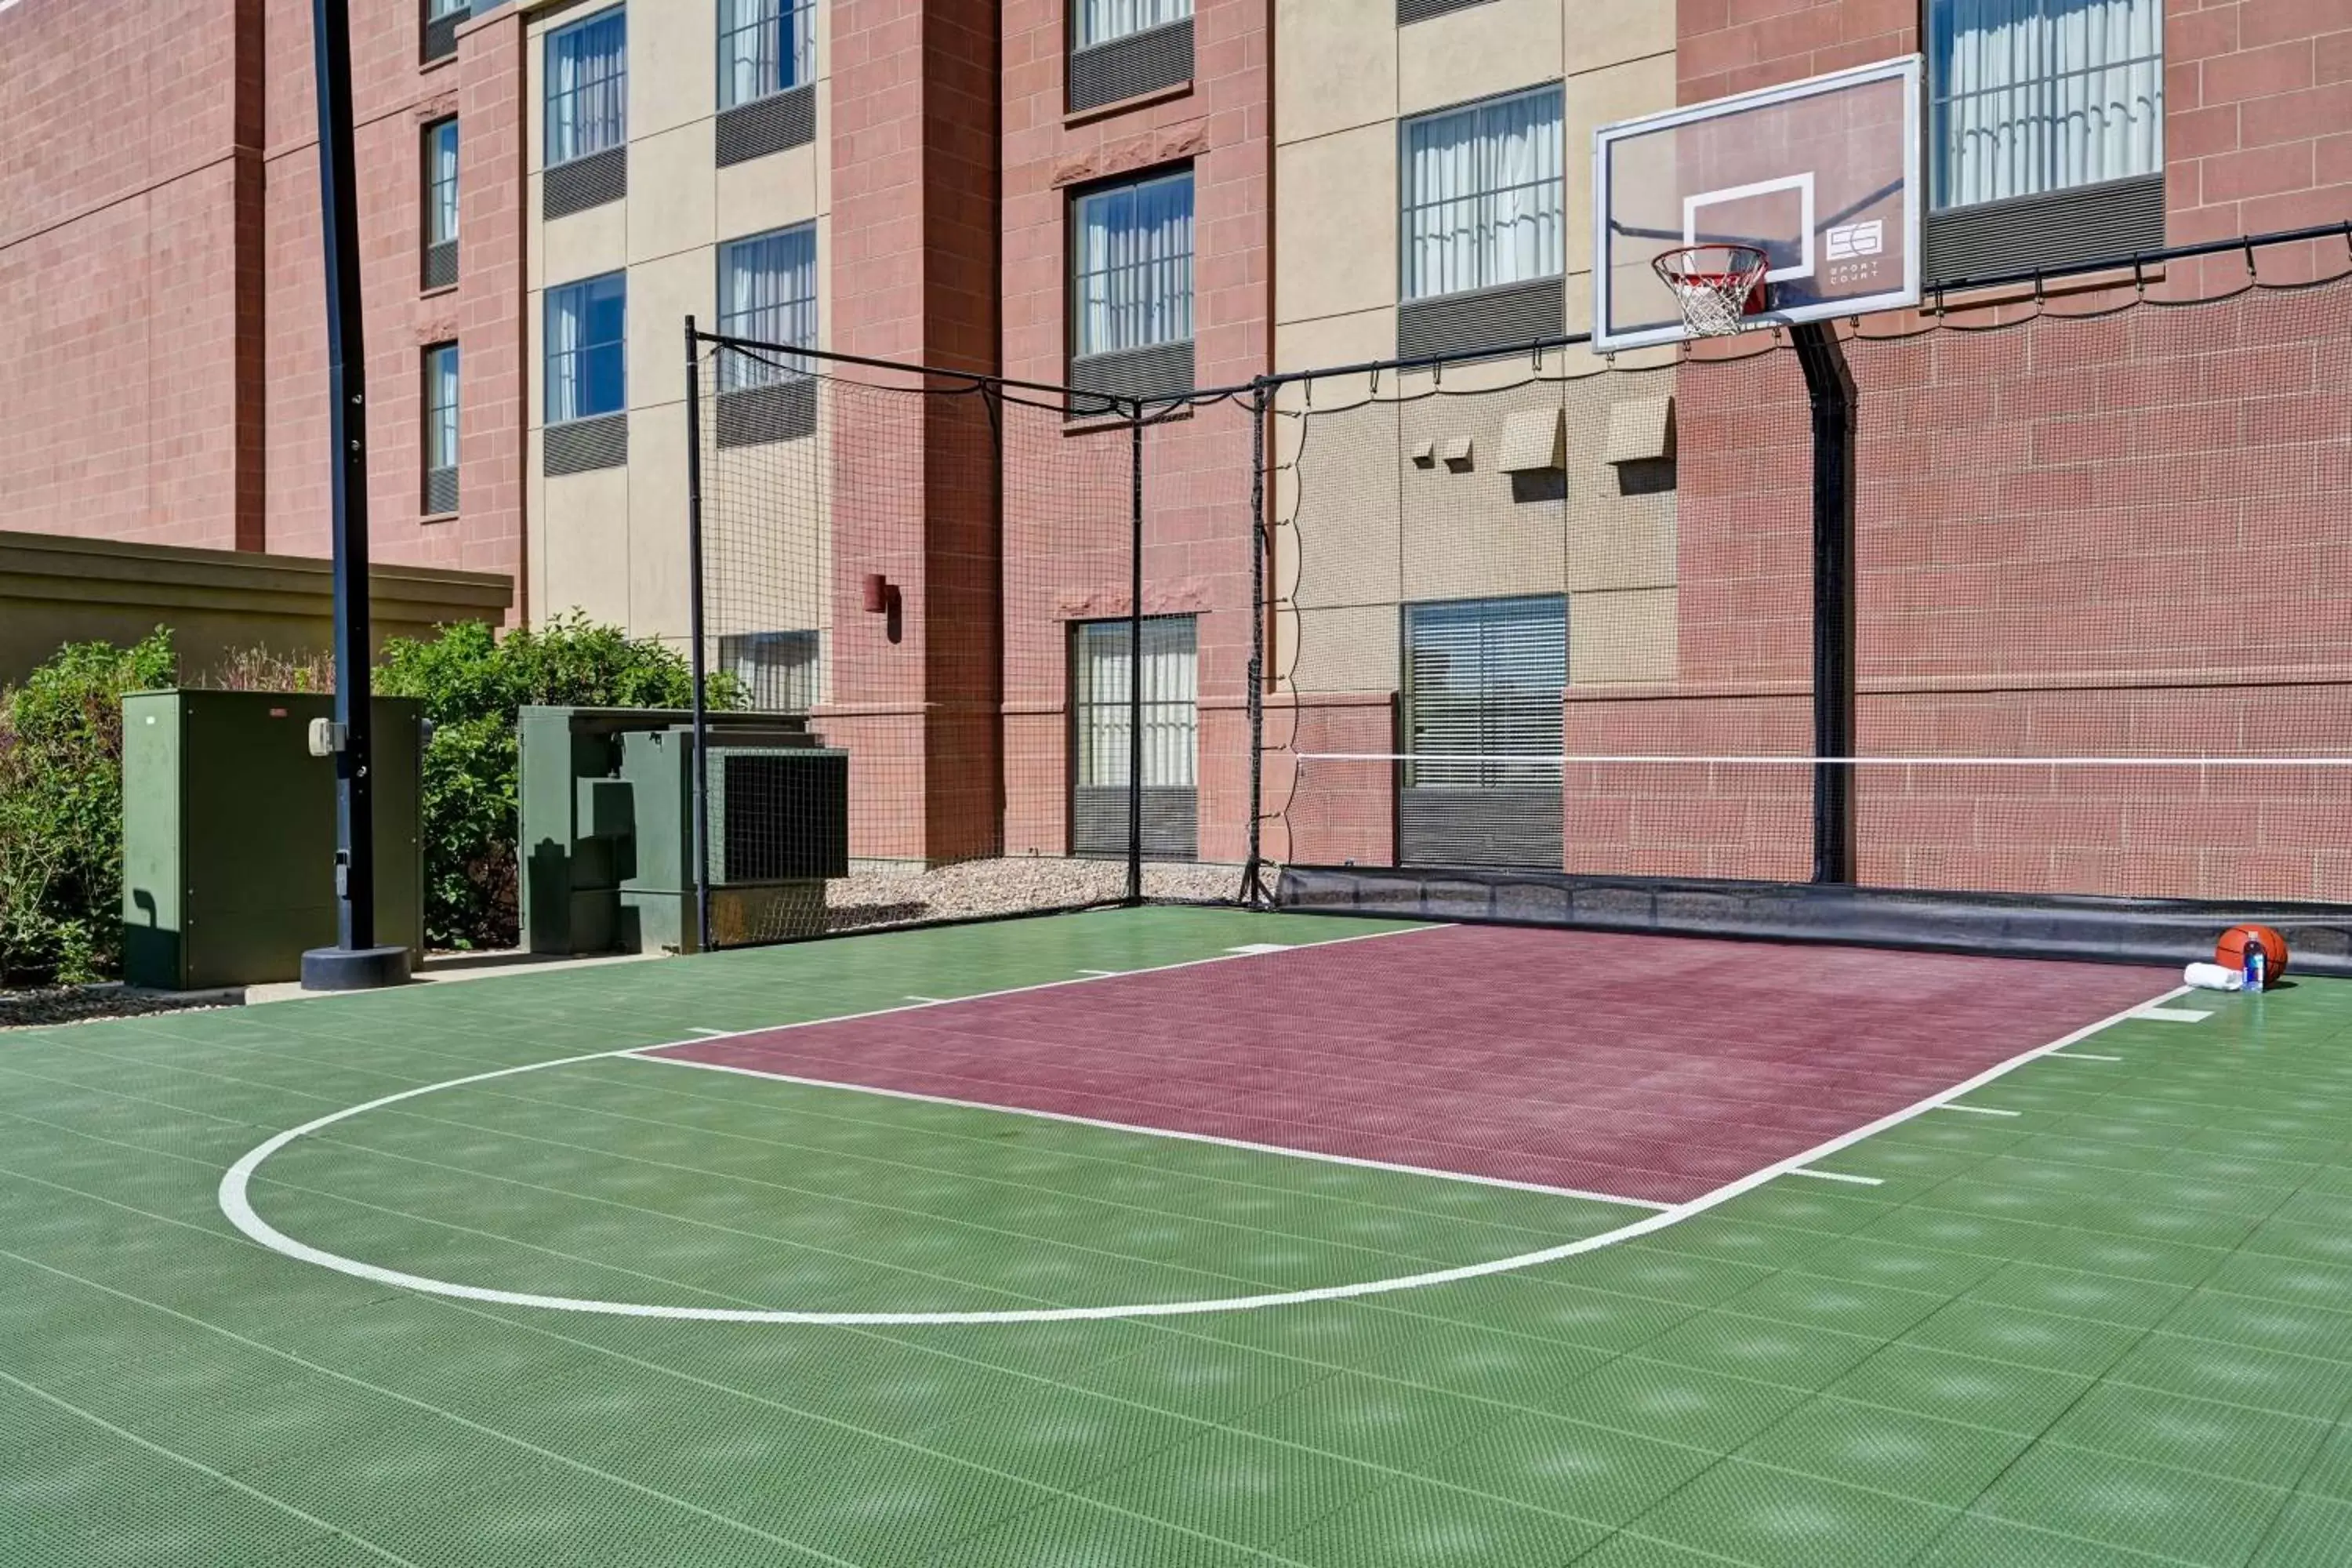 Property building, Tennis/Squash in Homewood Suites by Hilton Denver Tech Center